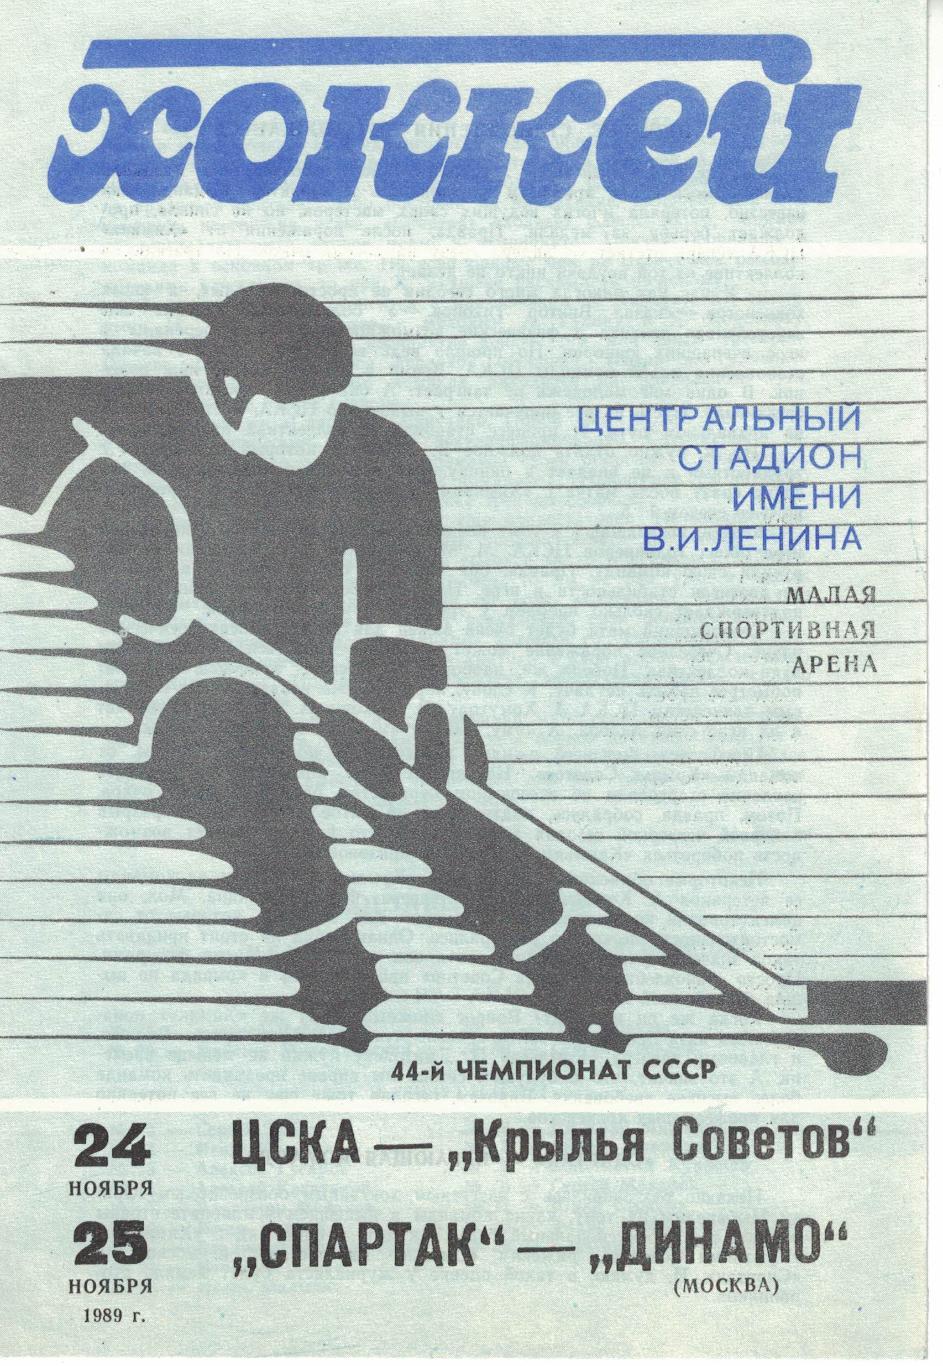 ЦСКА - Крылья Советов М, Спартак М - Динамо М 24 и 25.11.1989. Чемпионат СССР